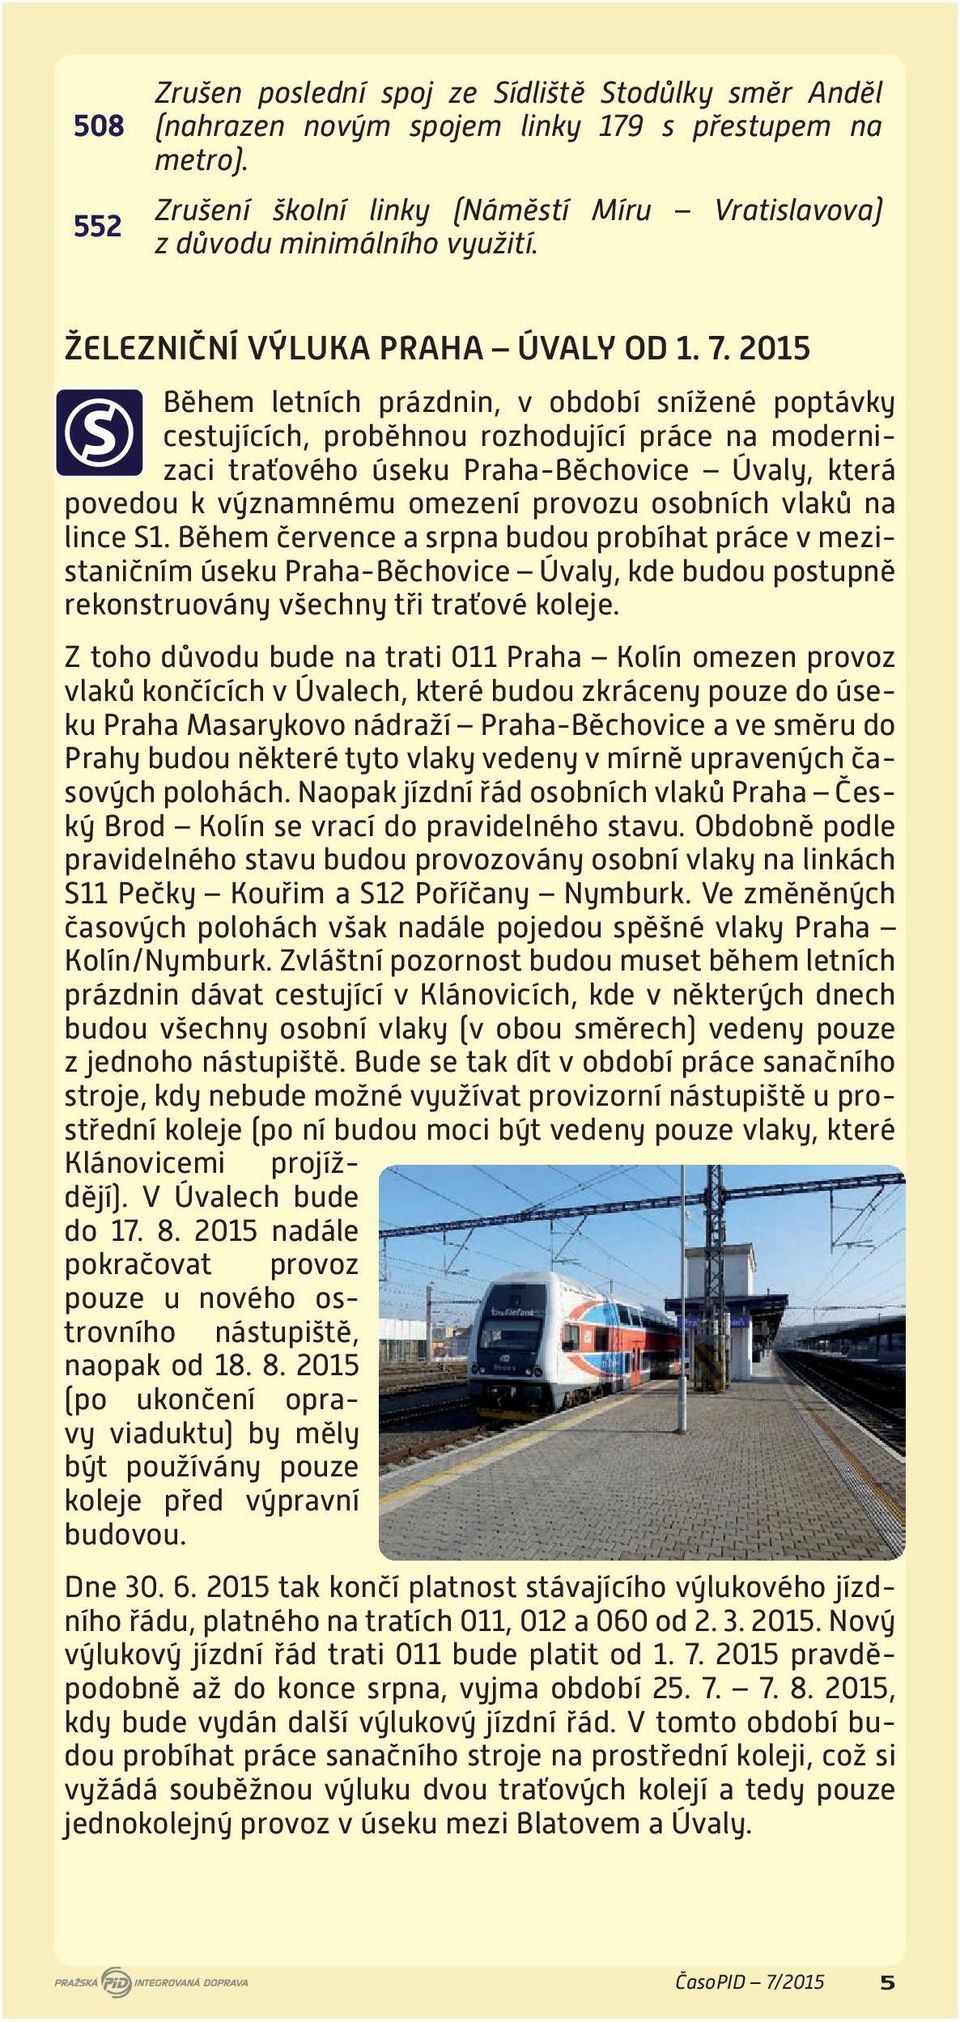 2015 Během letních prázdnin, v období snížené poptávky cestujících, proběhnou rozhodující práce na modernizaci traťového úseku Praha-Běchovice Úvaly, která povedou k významnému omezení provozu